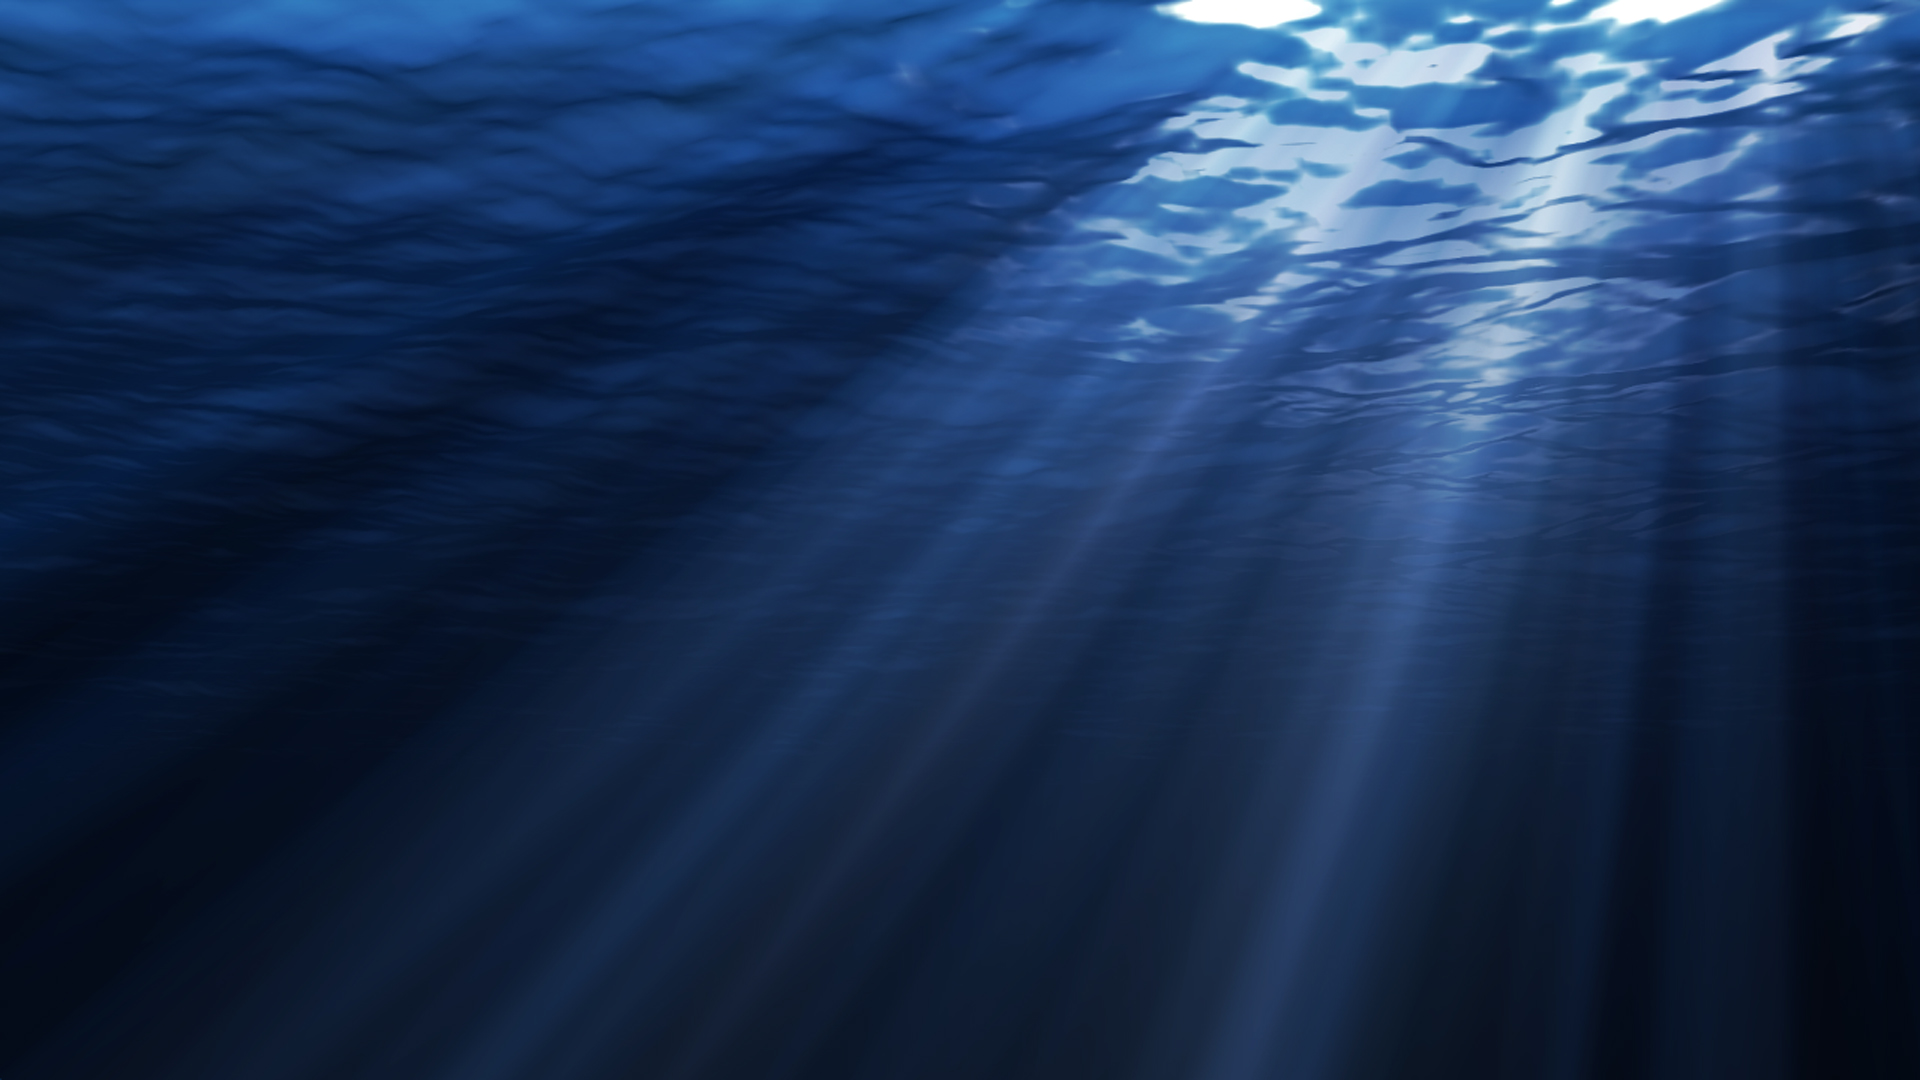 Underwater Backgrounds Free Download | PixelsTalk.Net